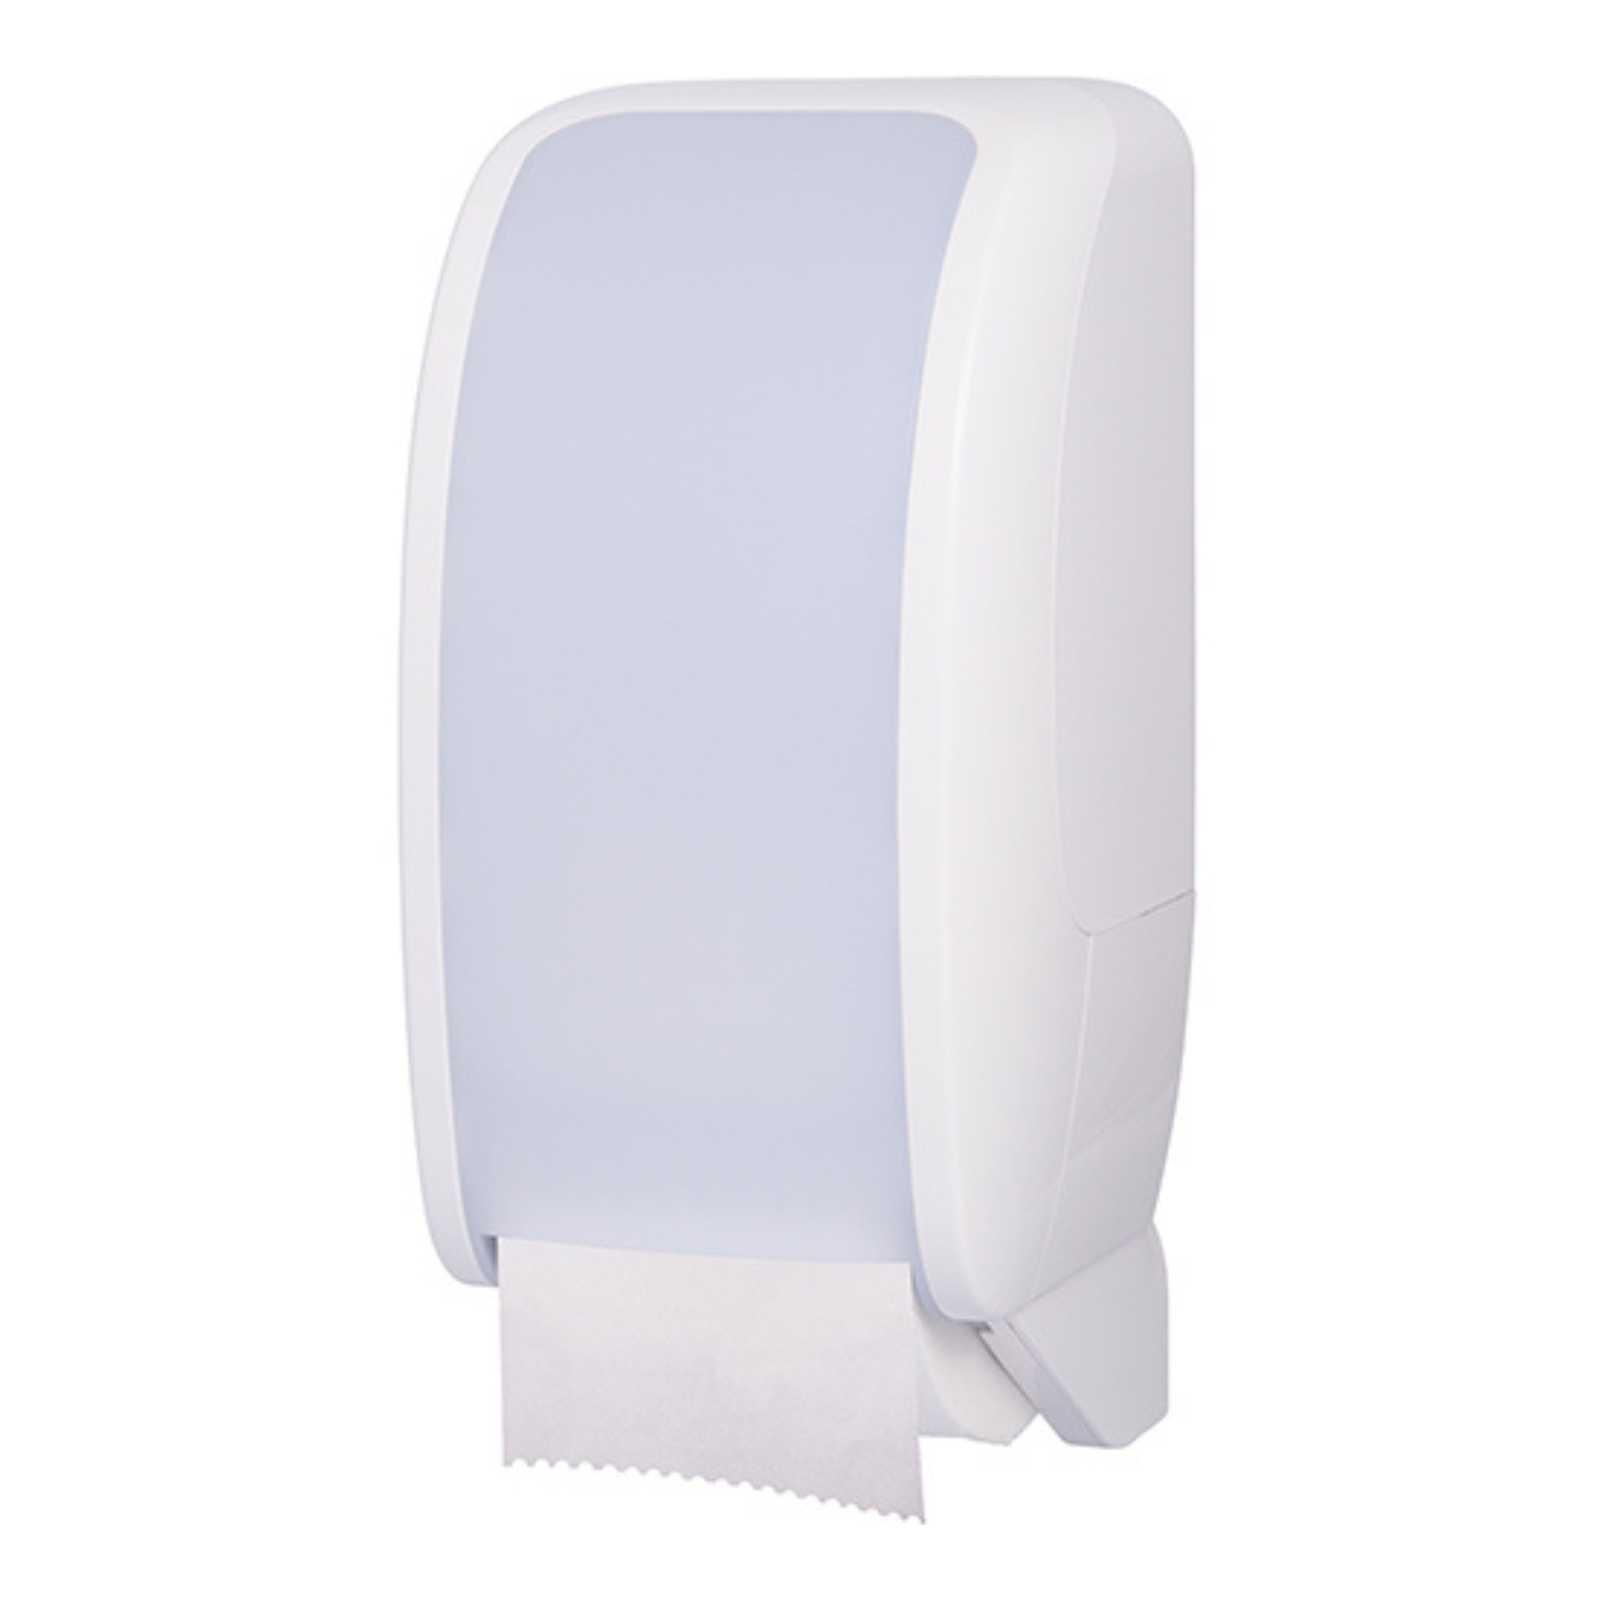 Pura - Toilet Roll Dispenser - White/White